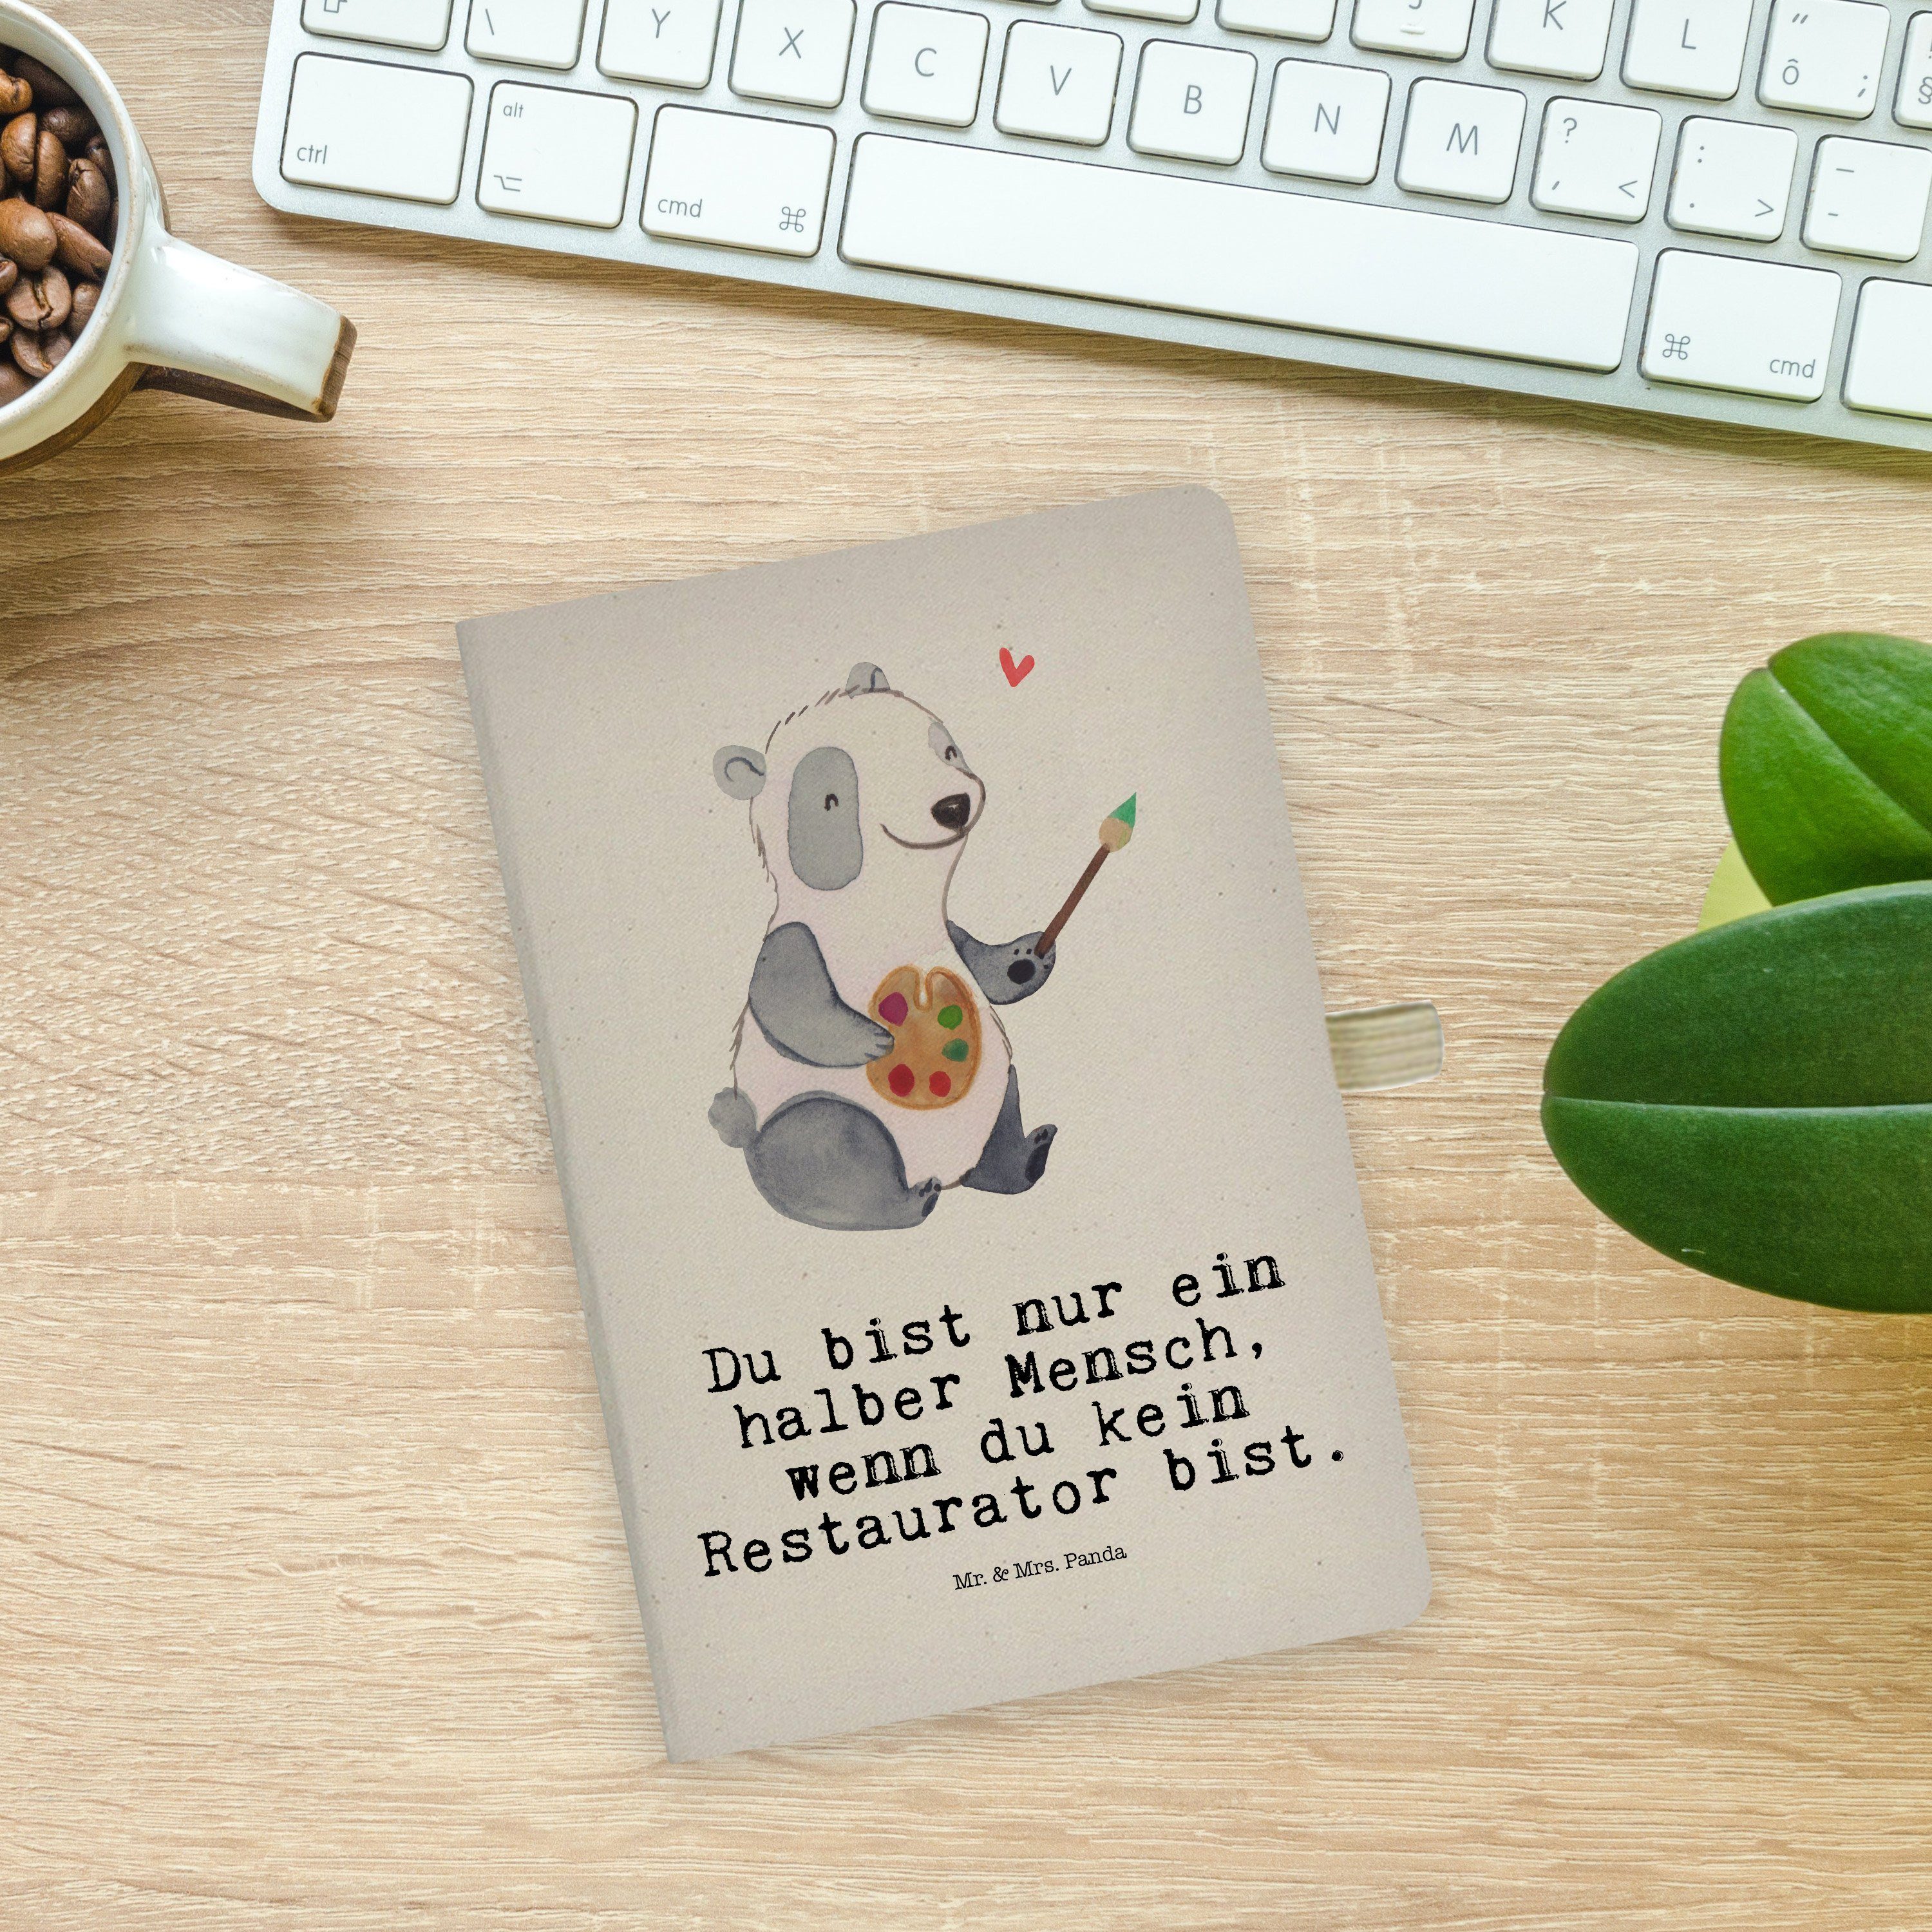 & Dankeschön, Notizbuch Herz Panda - Mrs. & mit Restaurator Transparent Panda Geschenk, Mr. Mrs. - Mr. Schenken,